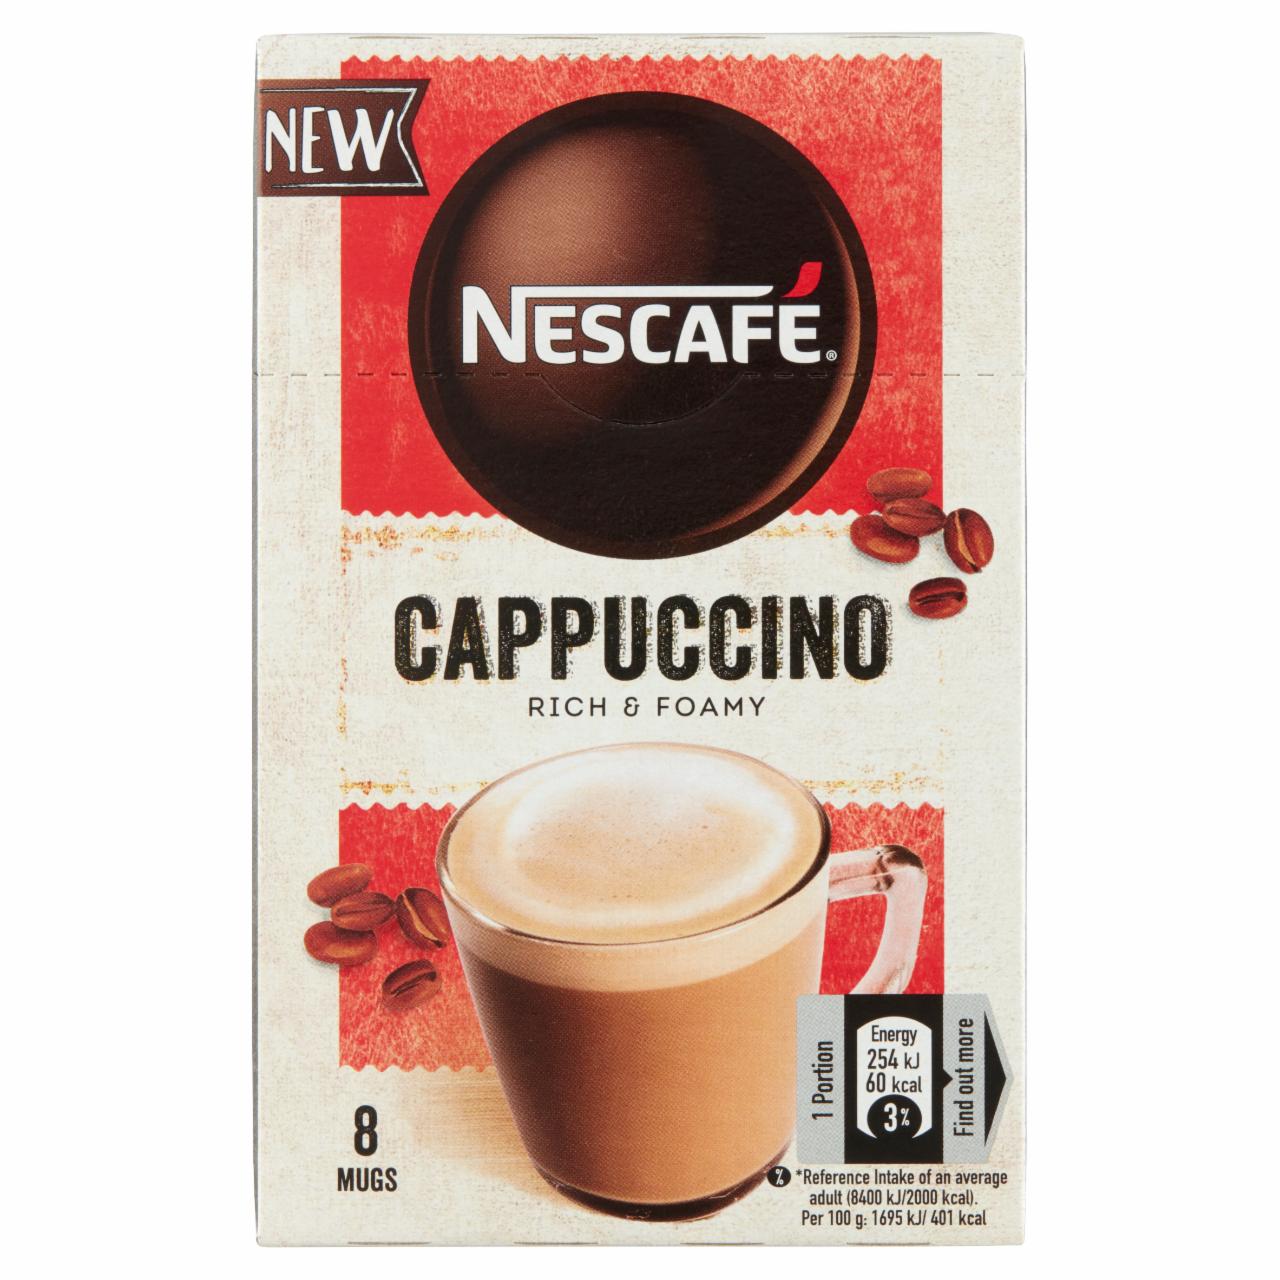 Képek - Nescafé Cappuccino azonnal oldódó kávéspecialitás 8 x 15 g (120 g)